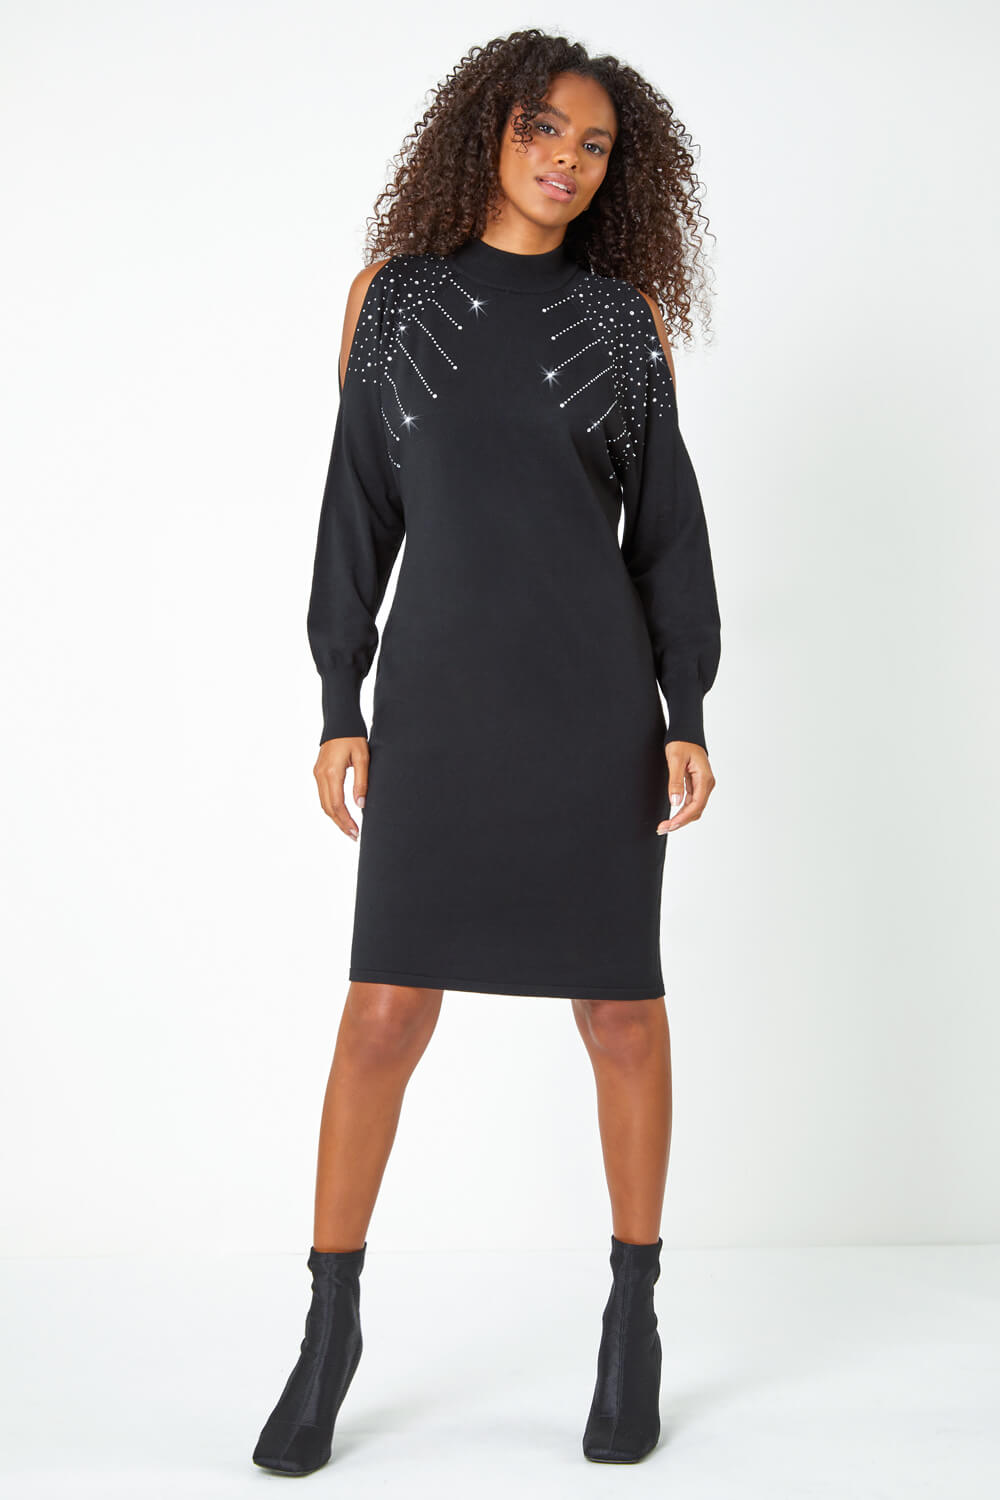 Black Embellished Split Sleeve Jumper Dress, Image 3 of 5